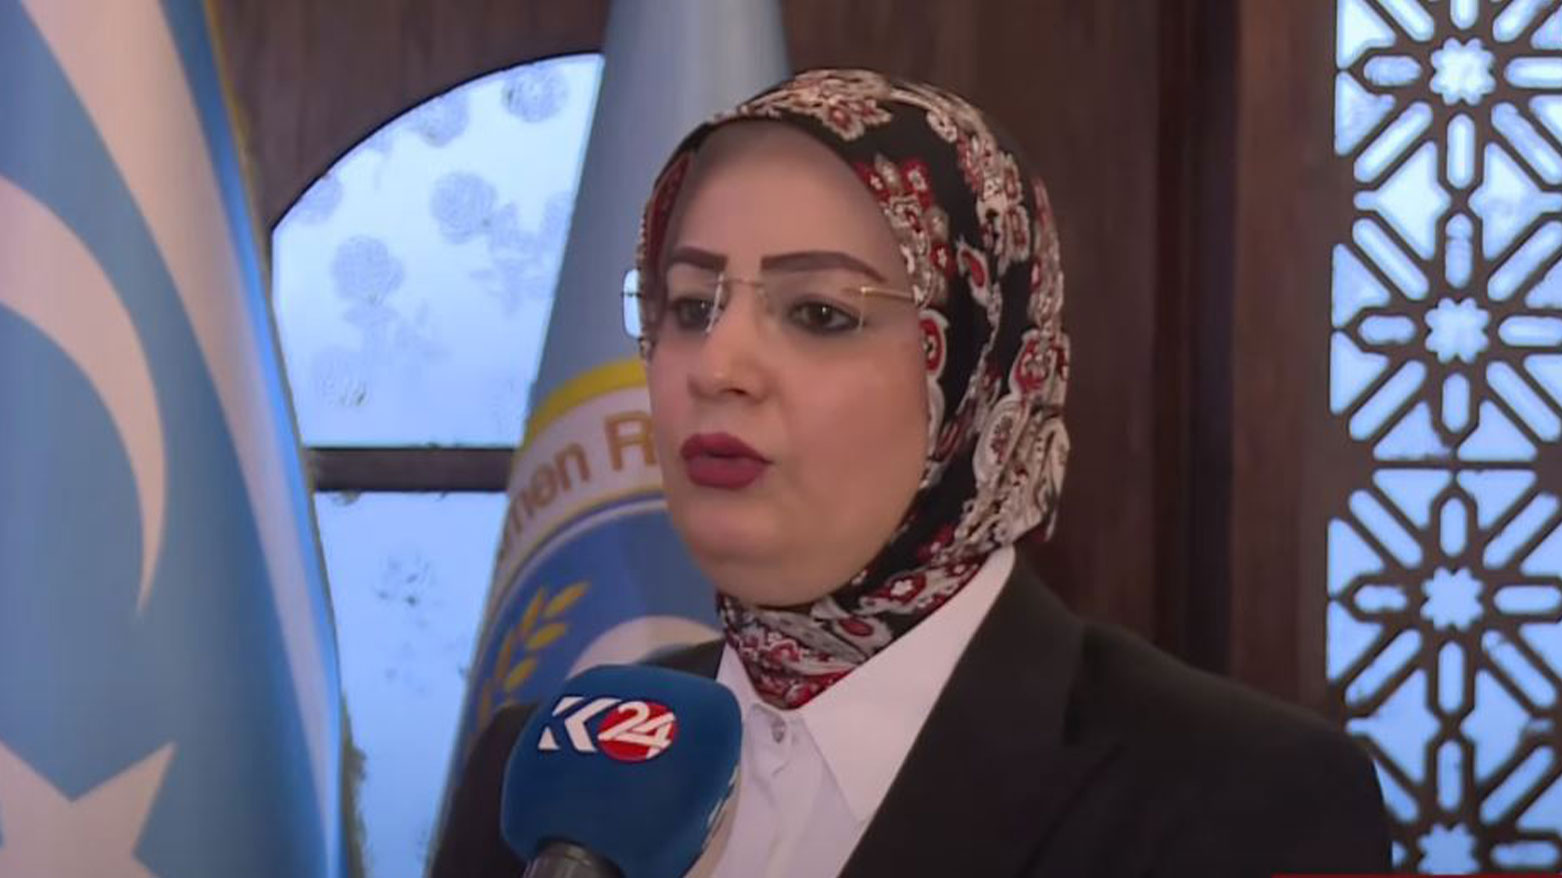 Türkmen Reform Partisi Başkan Yardımcısı Muna Kahveci